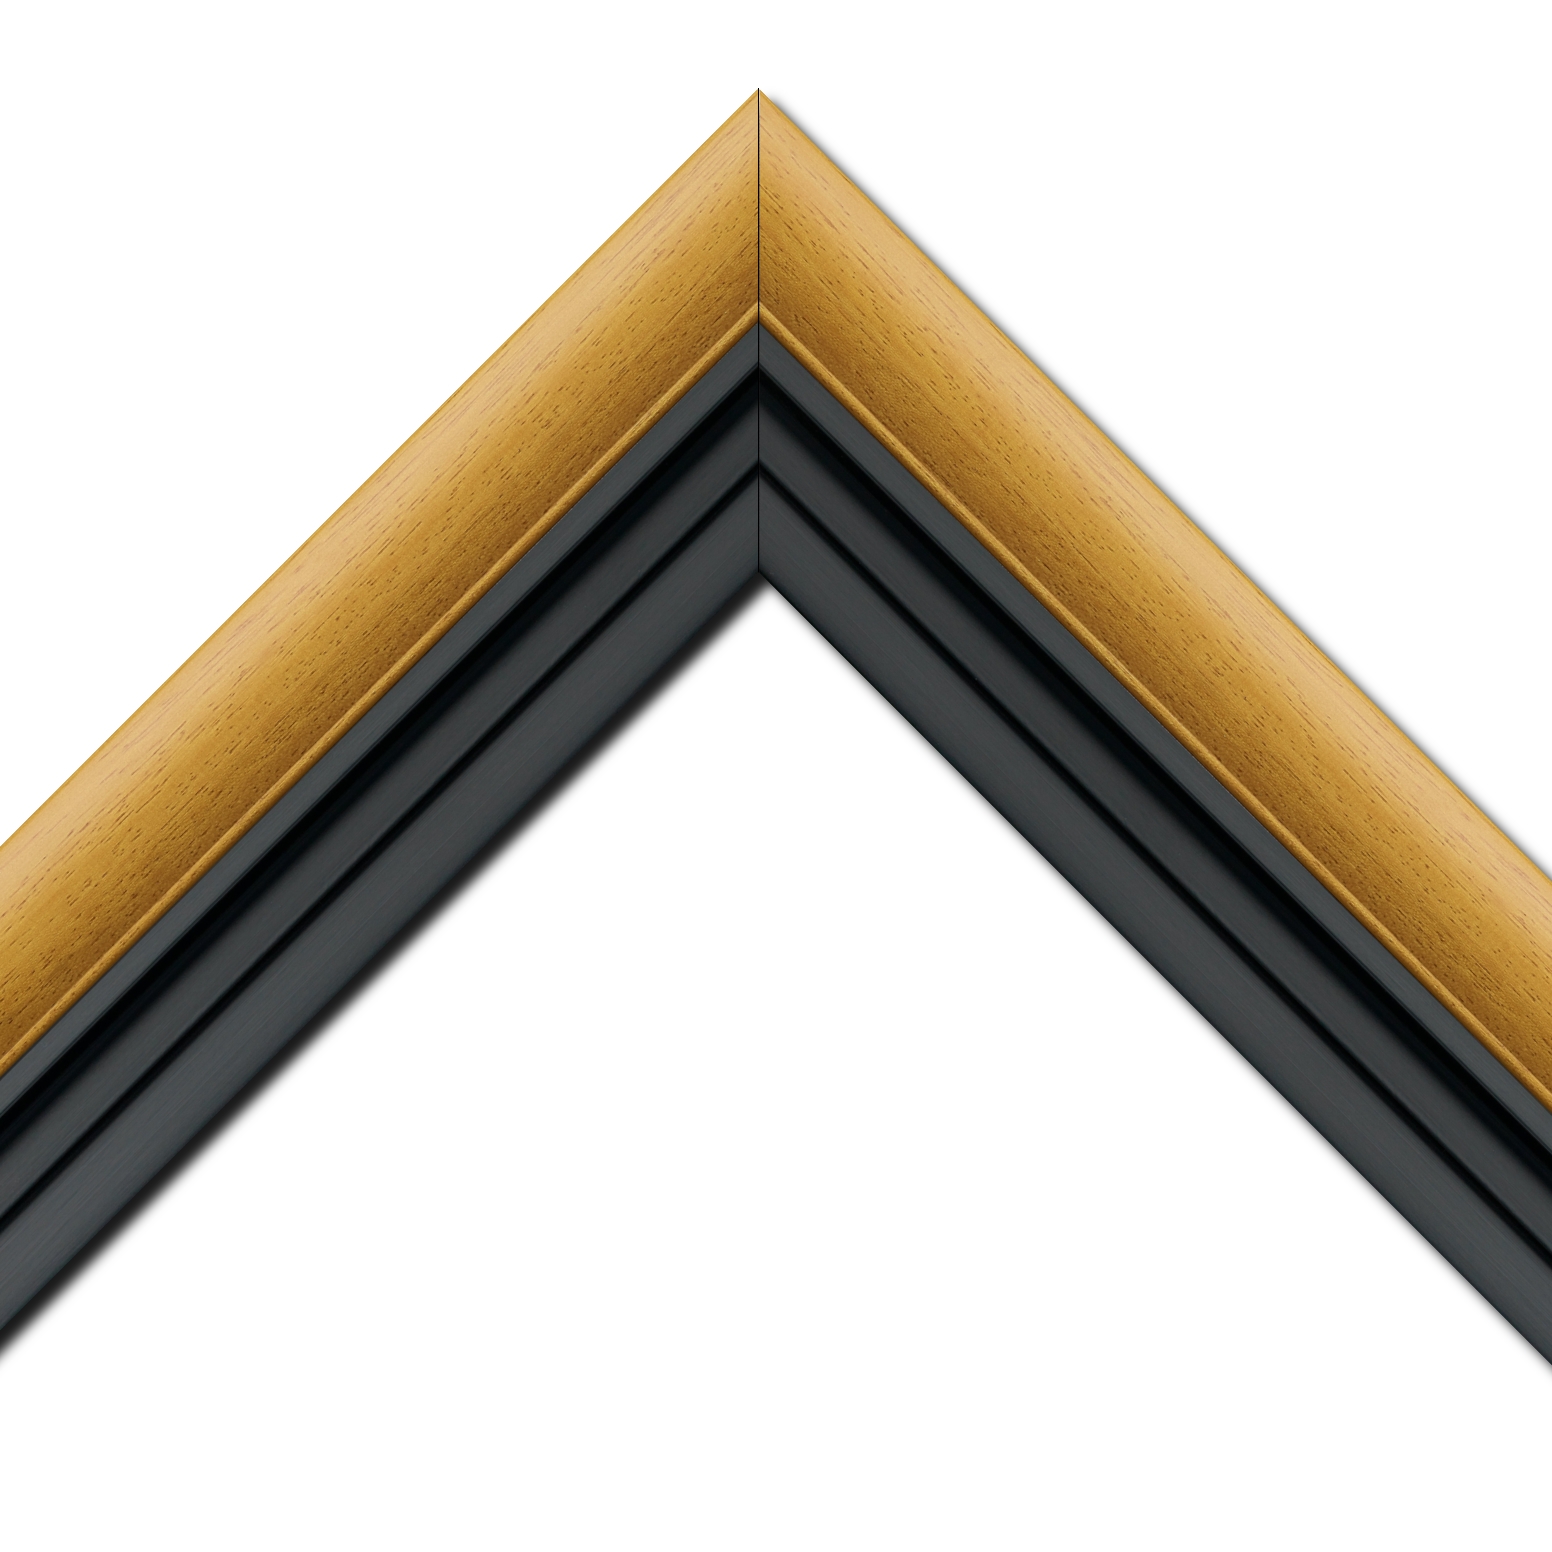 Baguette bois profil arrondi largeur 4.7cm couleur jaune tournesol satiné rehaussé d'un filet noir + bois caisse américaine profil escalier largeur 4.4cm noir mat   (spécialement conçu pour les châssis d'une épaisseur jusqu’à 2.5cm ) largeur total du cadre : 8.3cm